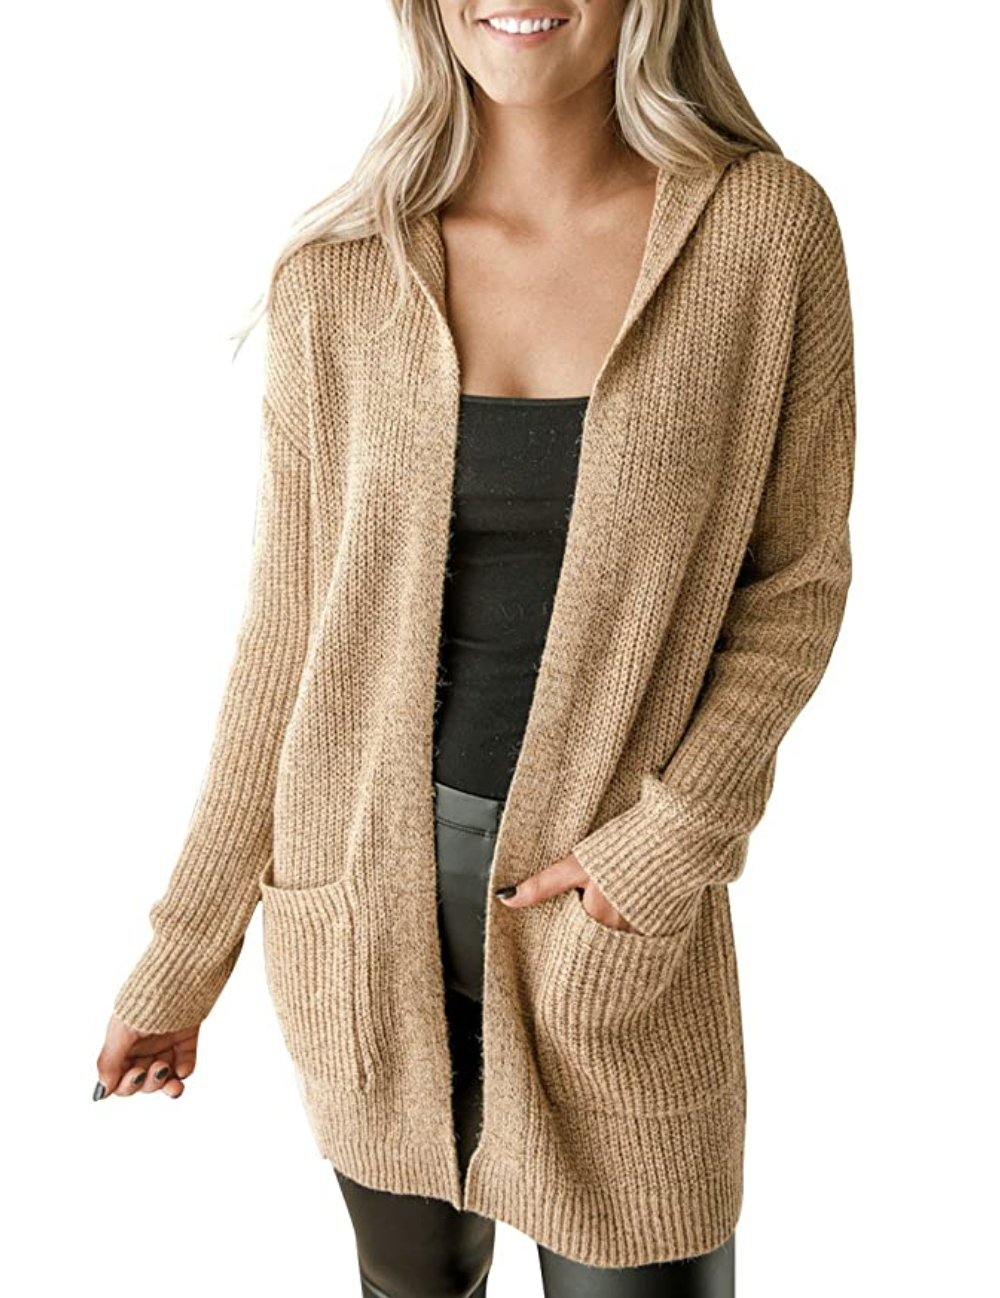 MEROKEETY Women's Open Front Long Sleeve Knit Hooded Cardigan Sweater